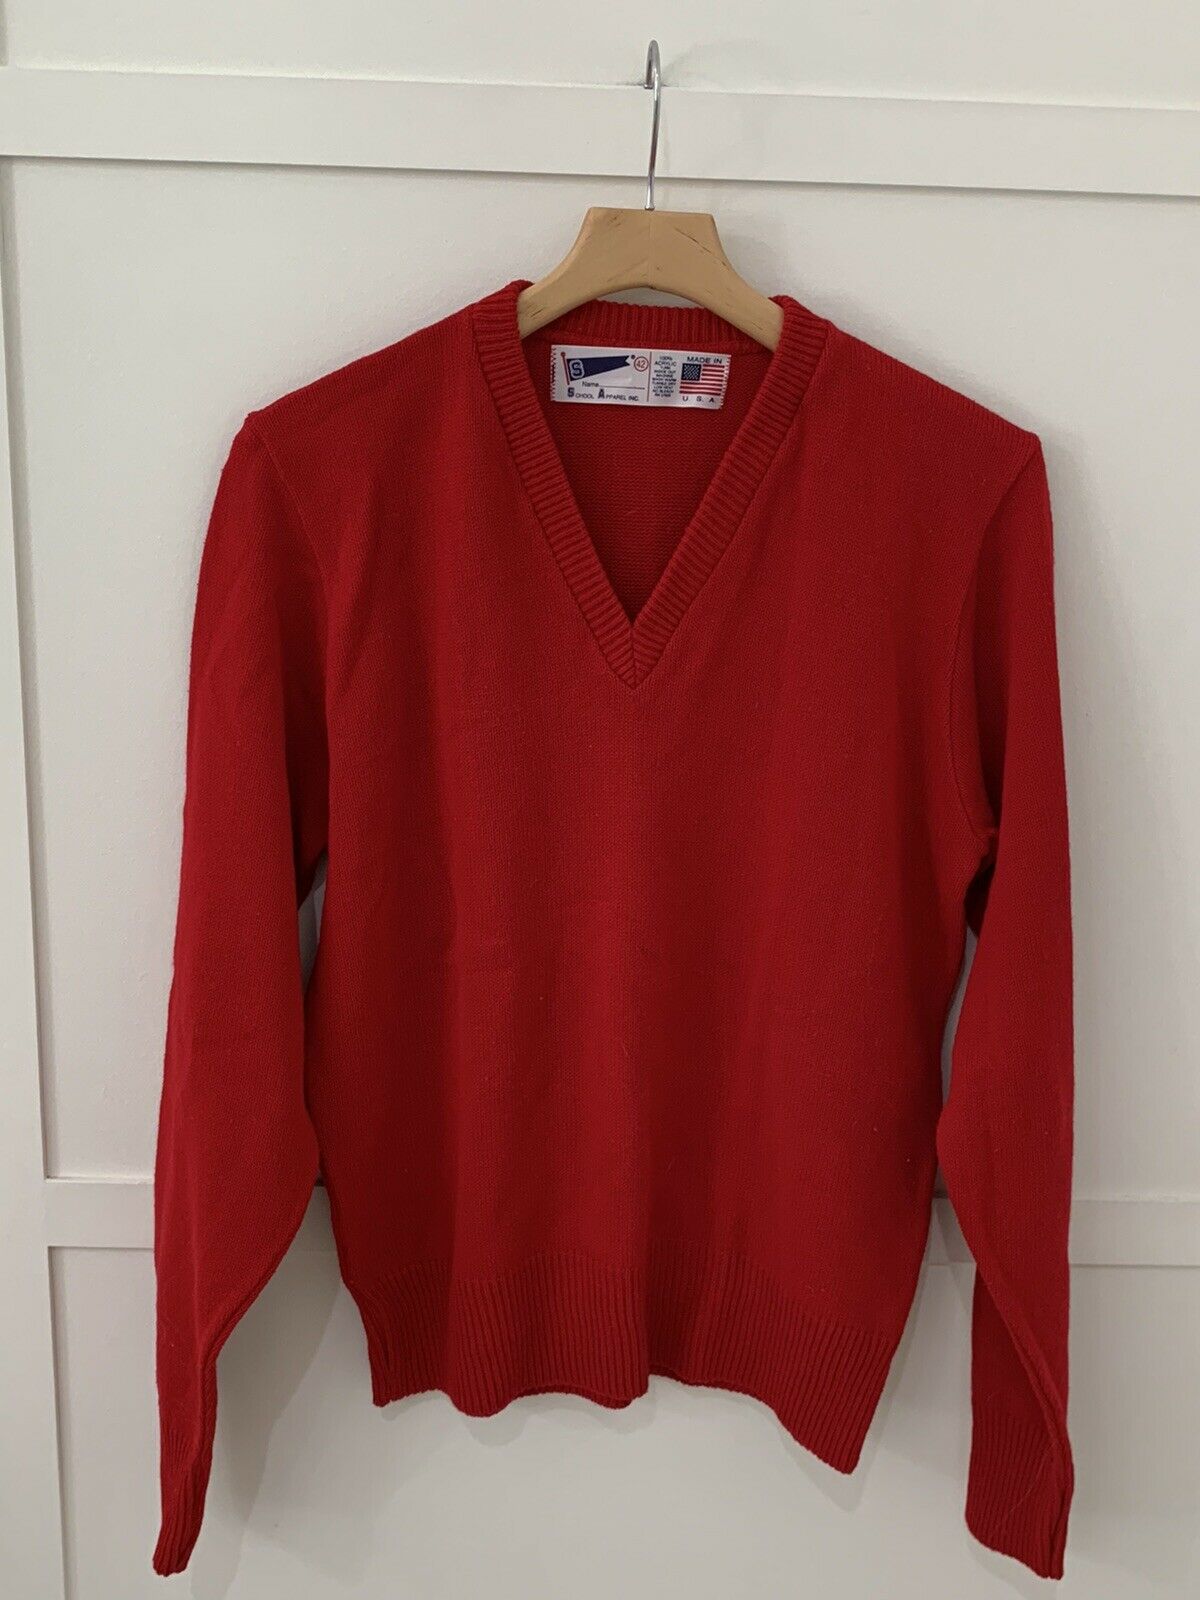 Vintage School Apparel Inc Sweater Sz 42 L Red Euc Vneck Low Pil